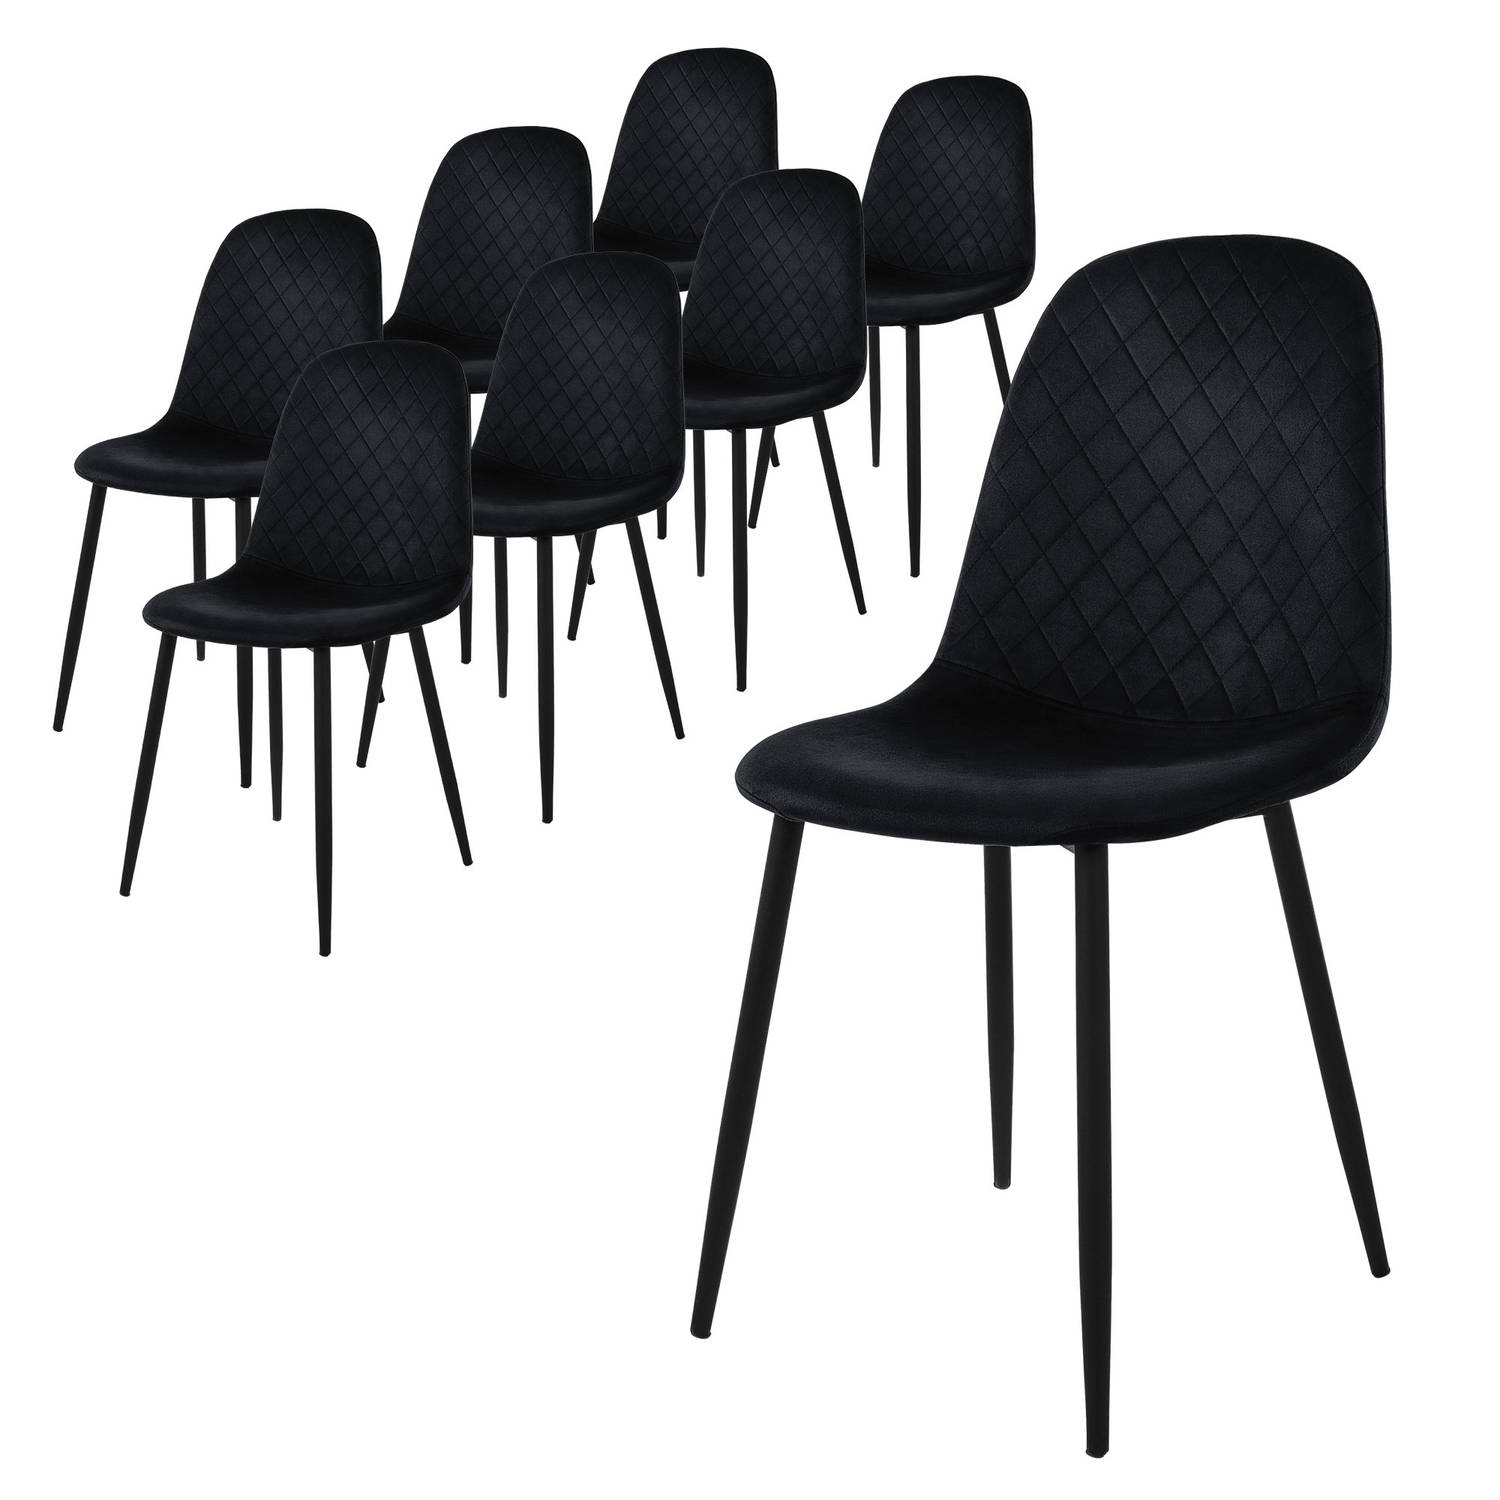 ML-Design eetkamerstoelen set van 8, zwart, keukenstoel met fluwelen bekleding, woonkamerstoel met rugleuning, gestoffeerde stoel met metalen poten, ergonomische stoel voor eettafe